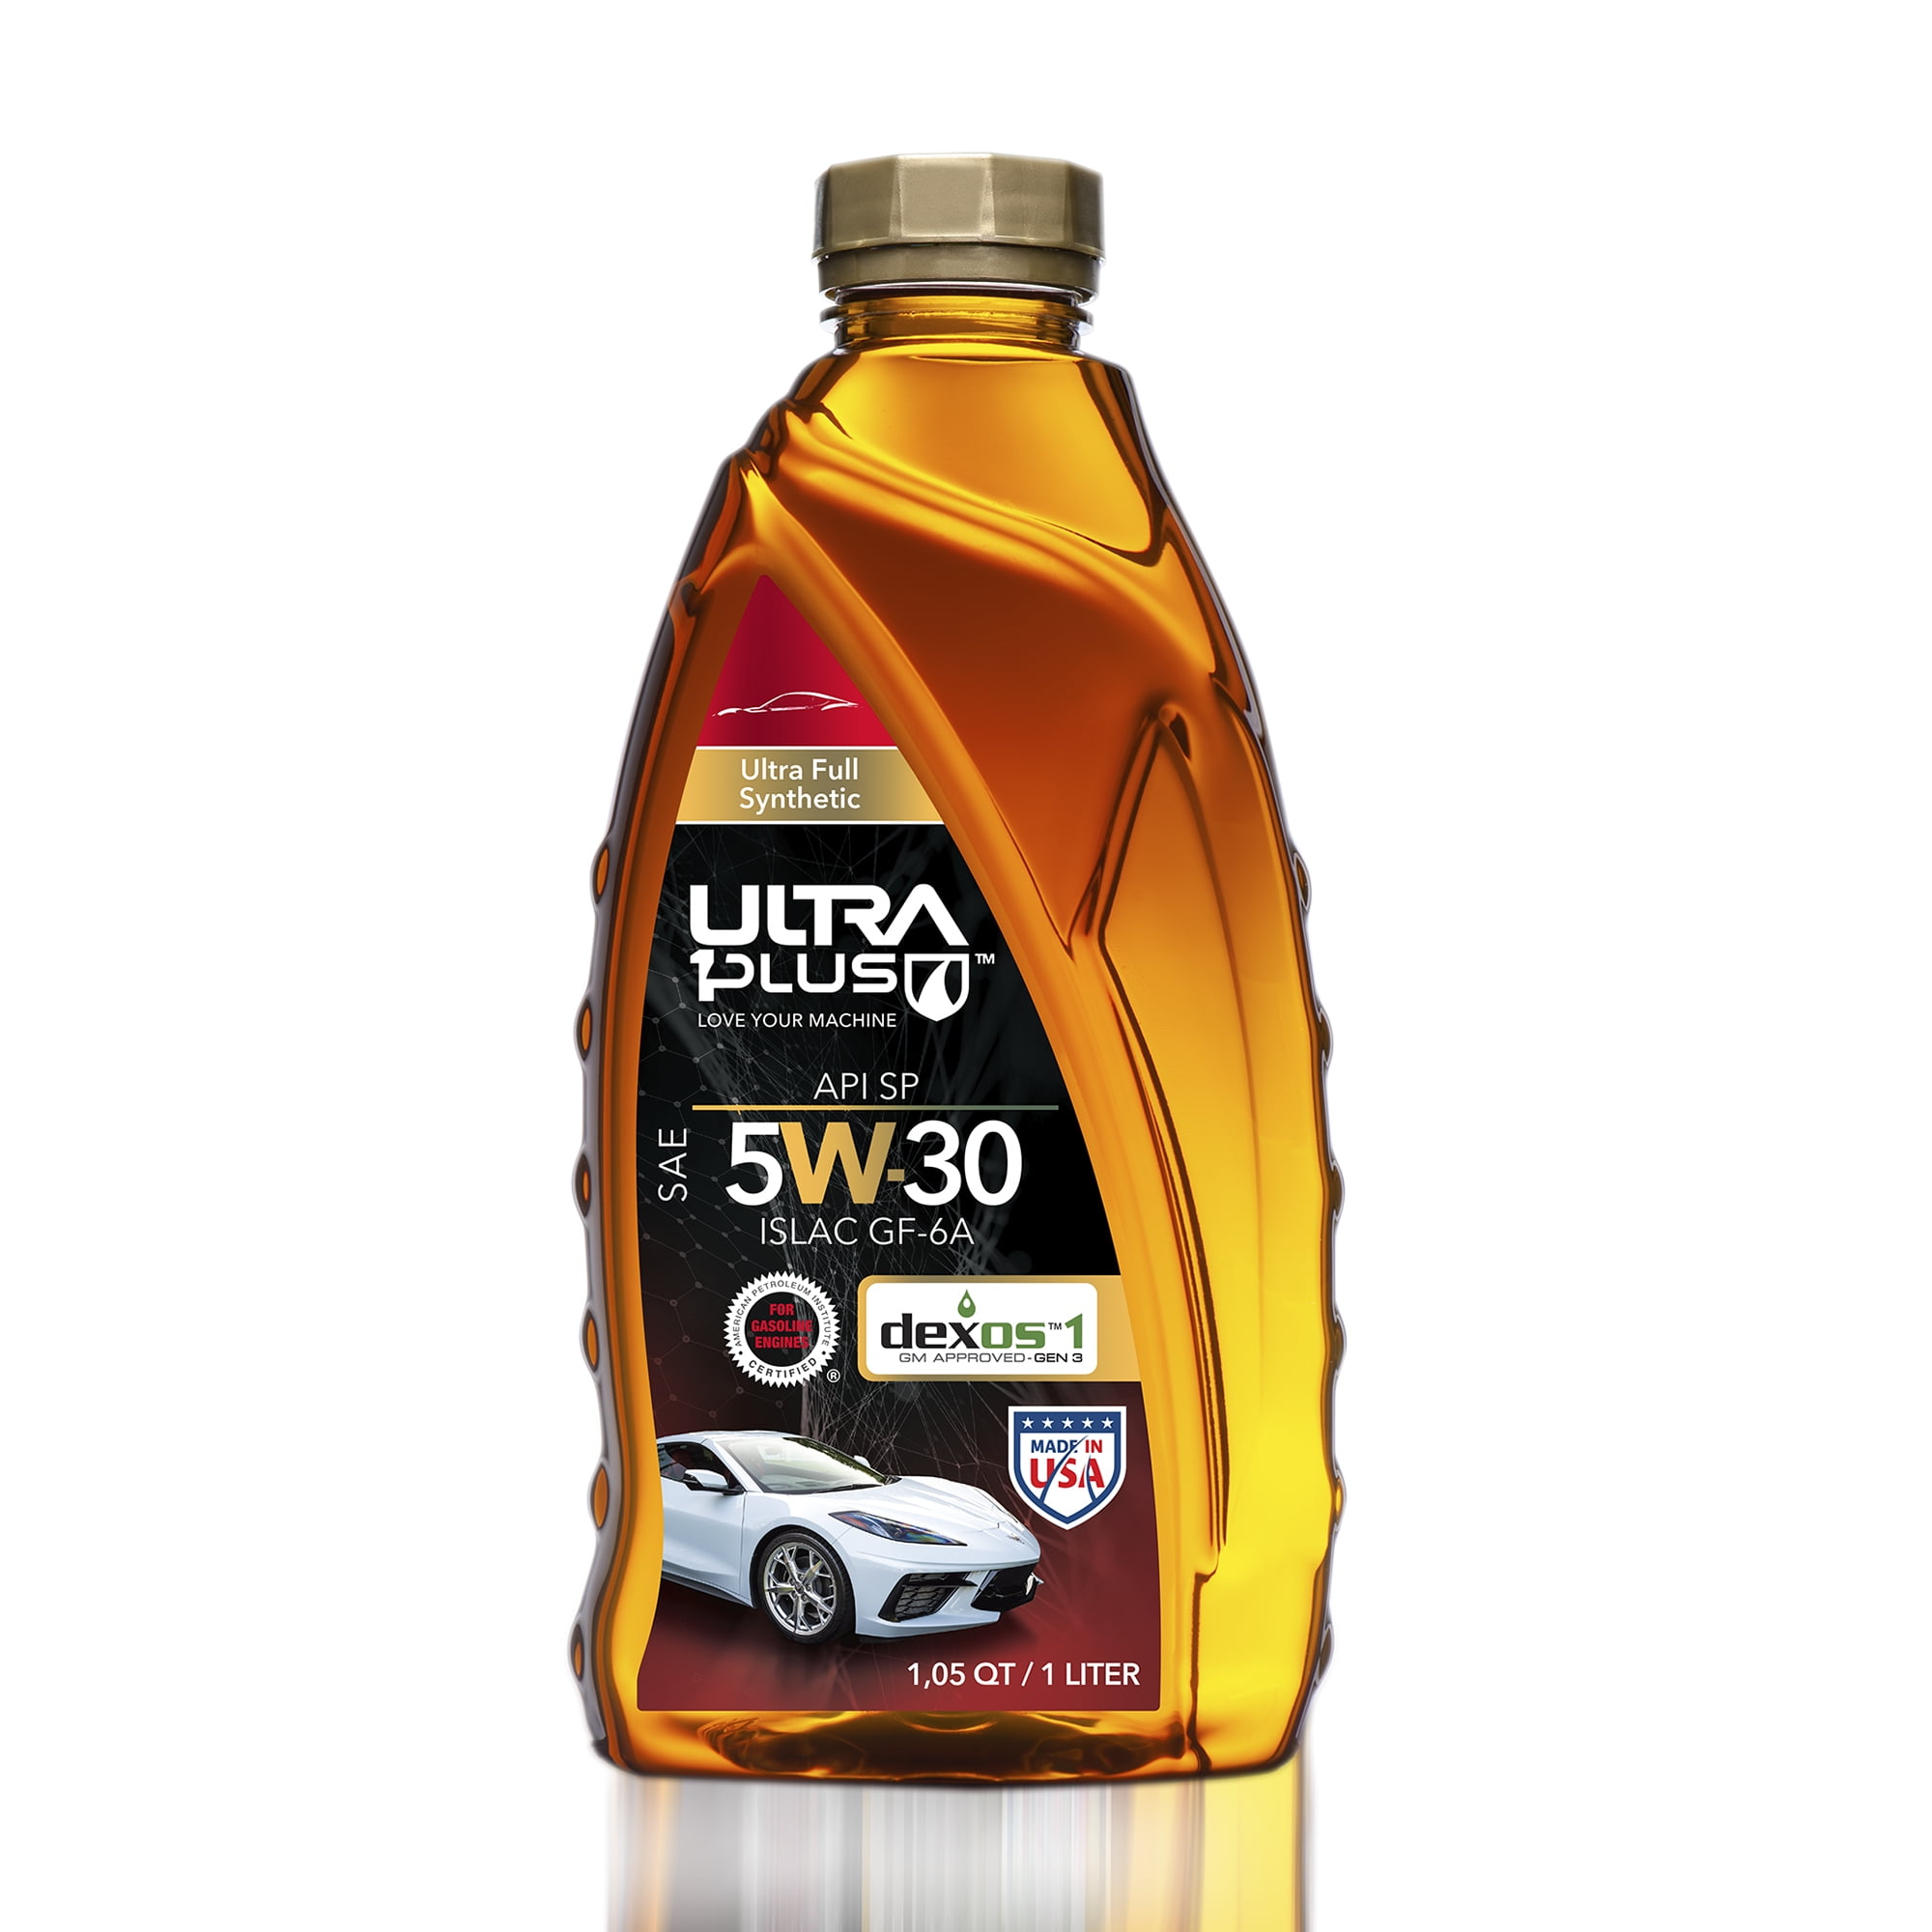 Ultra1Plus™ SAE 5W-30 Full Synthetic Motor Oil, API SP, ILSAC GF-6A .